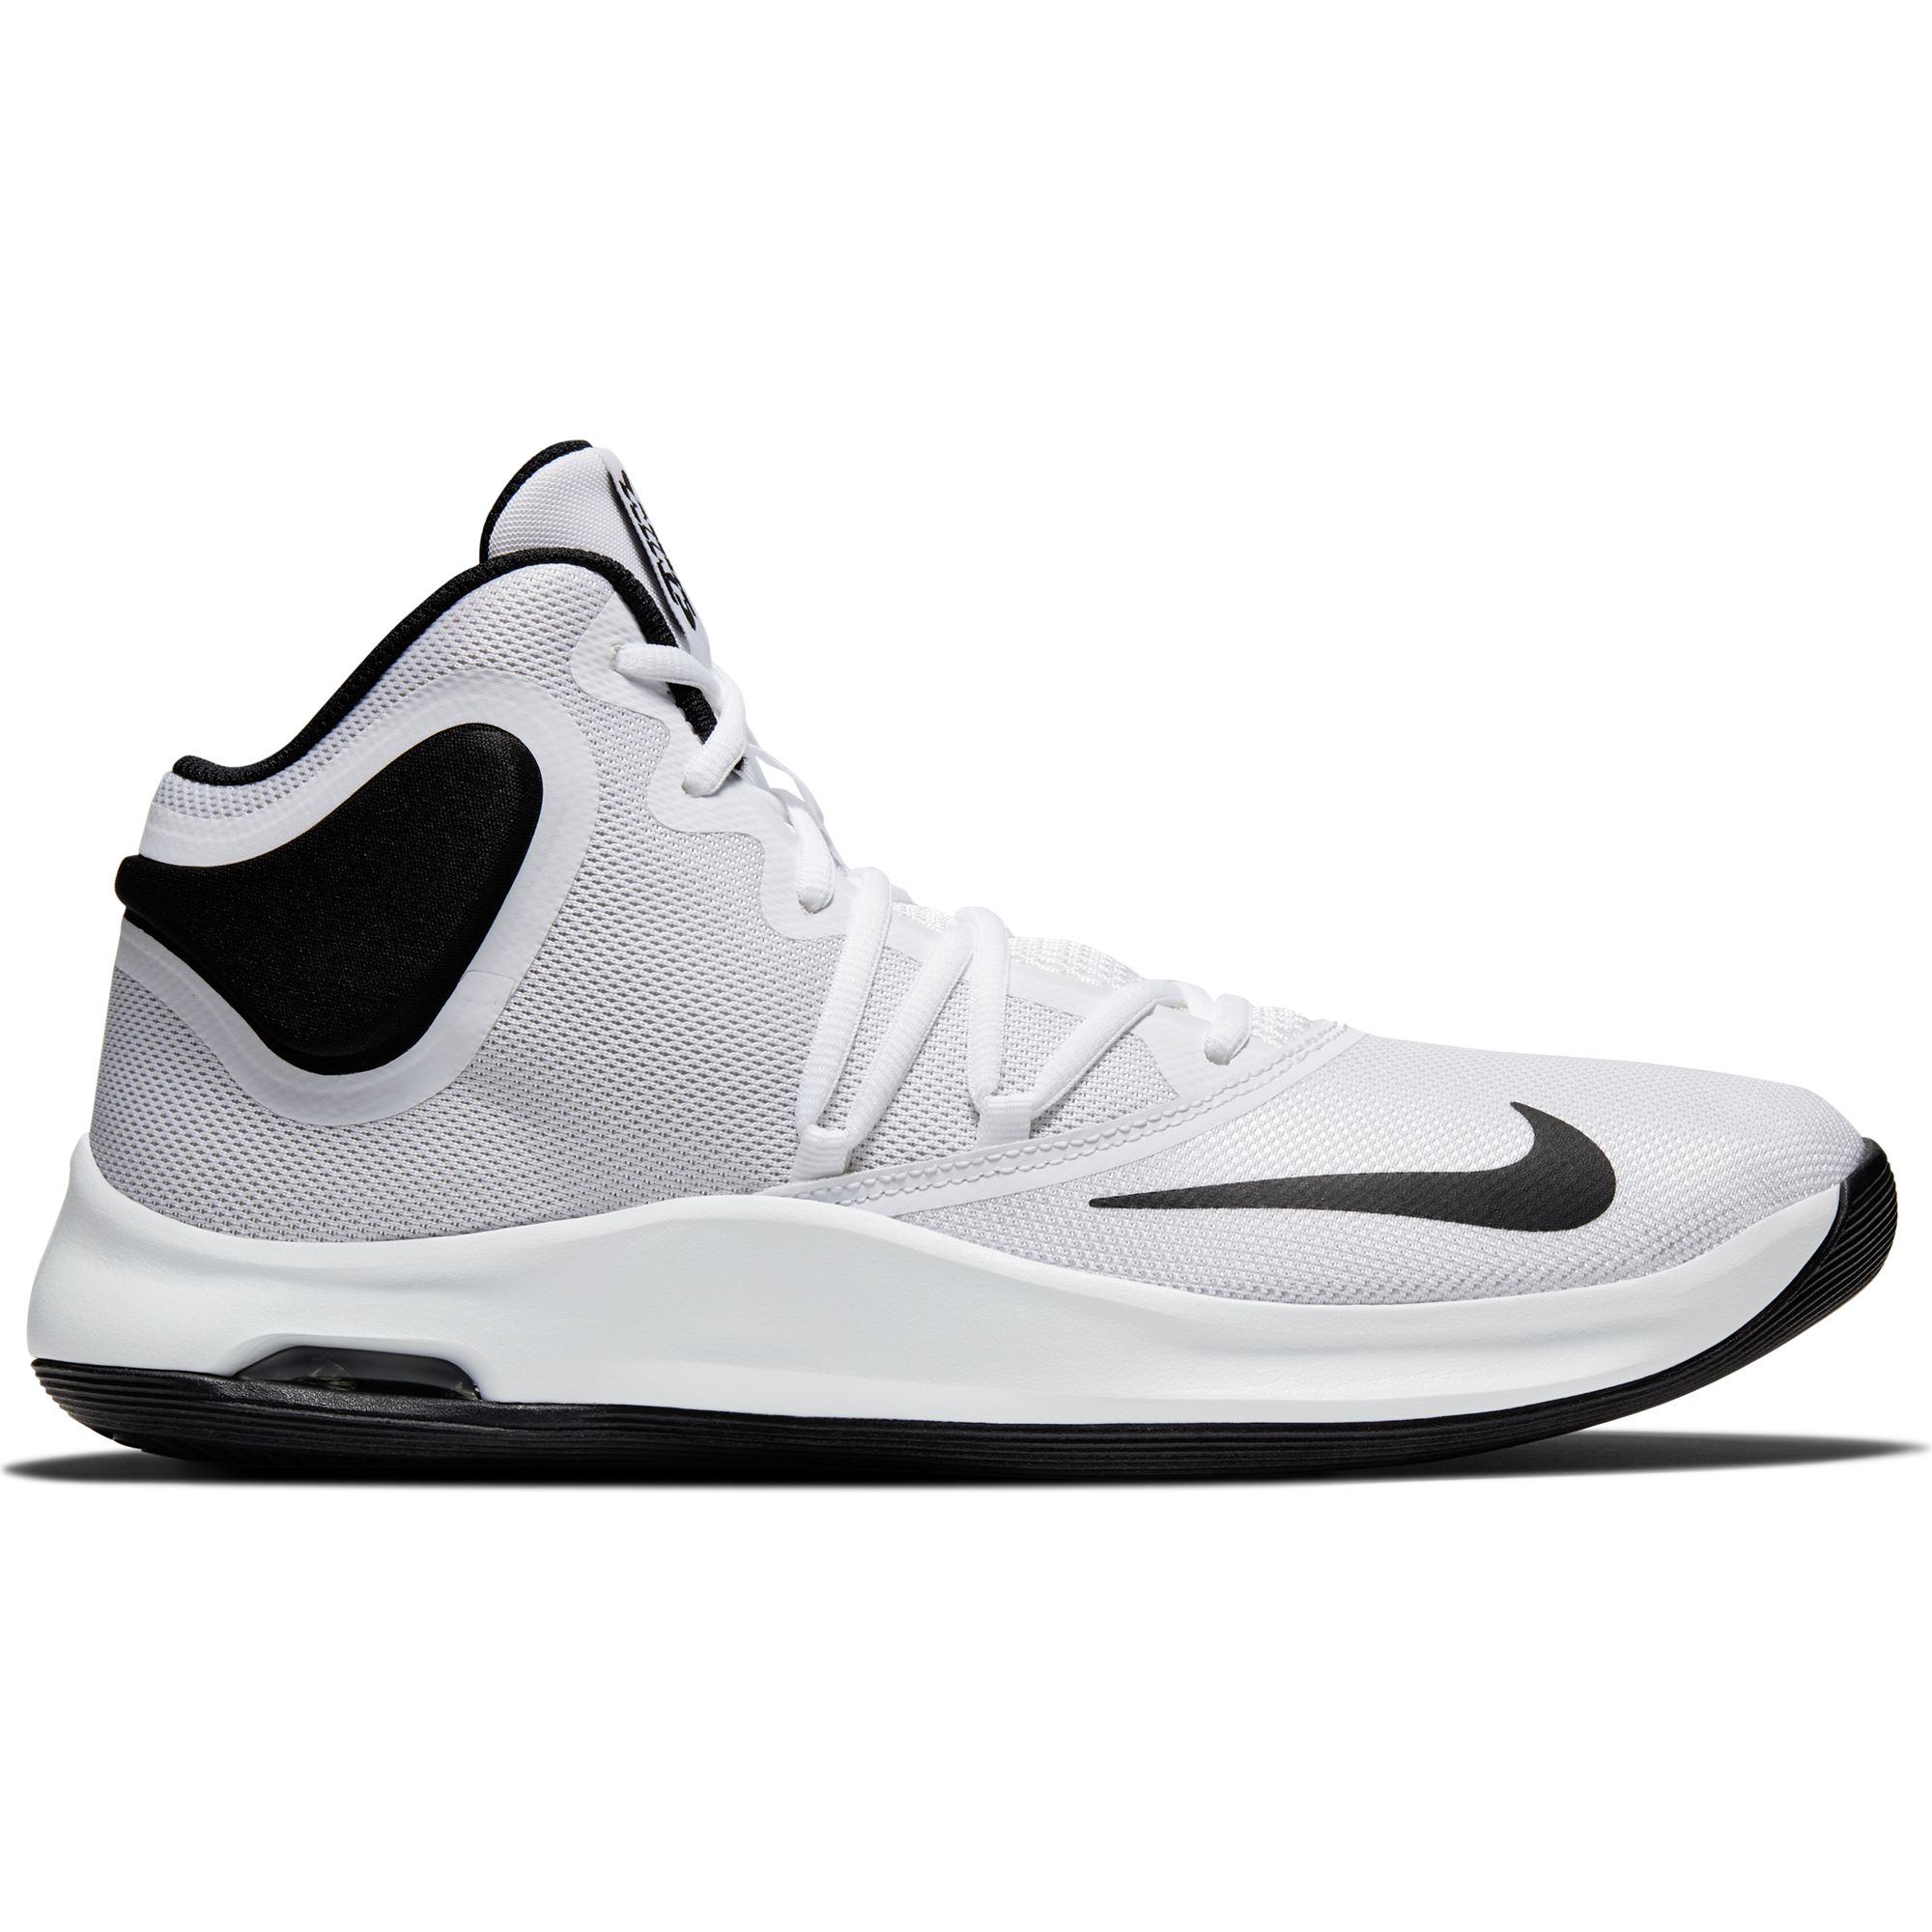 Баскетбольные кроссовки Nike Air Versitile IV - картинка